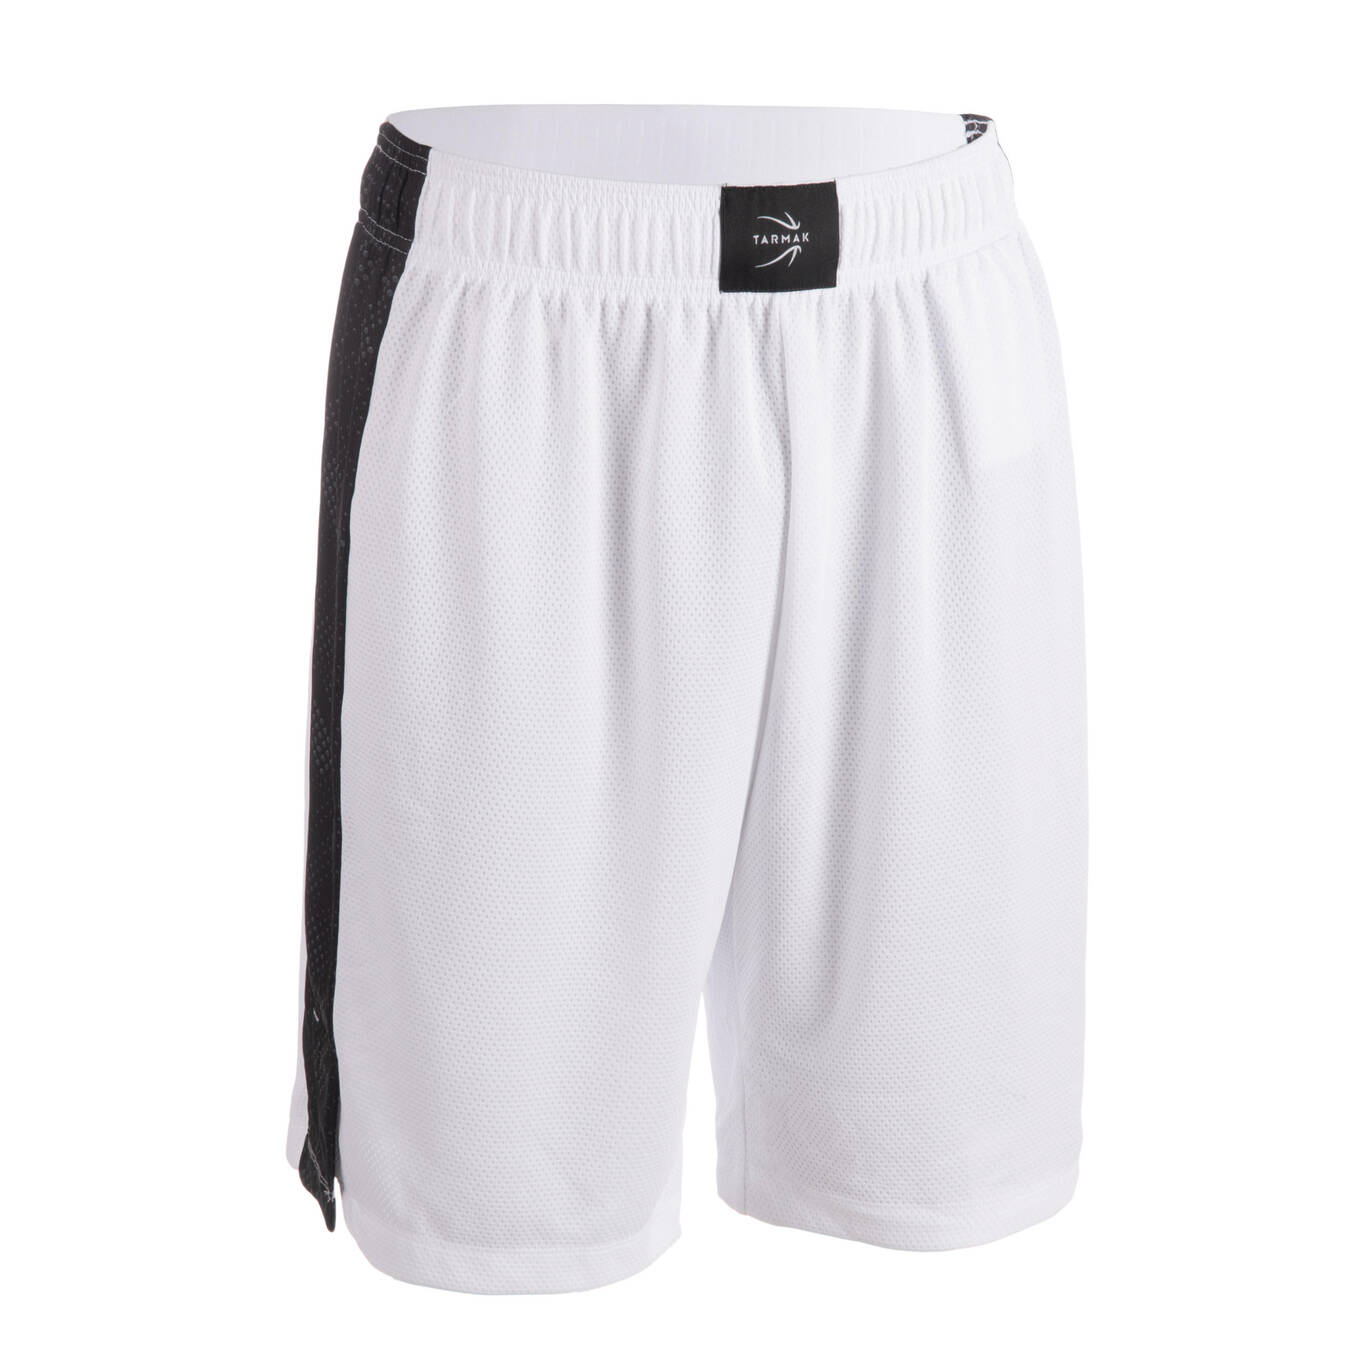 Men's/Women's Basketball Shorts SH500 - White/Black